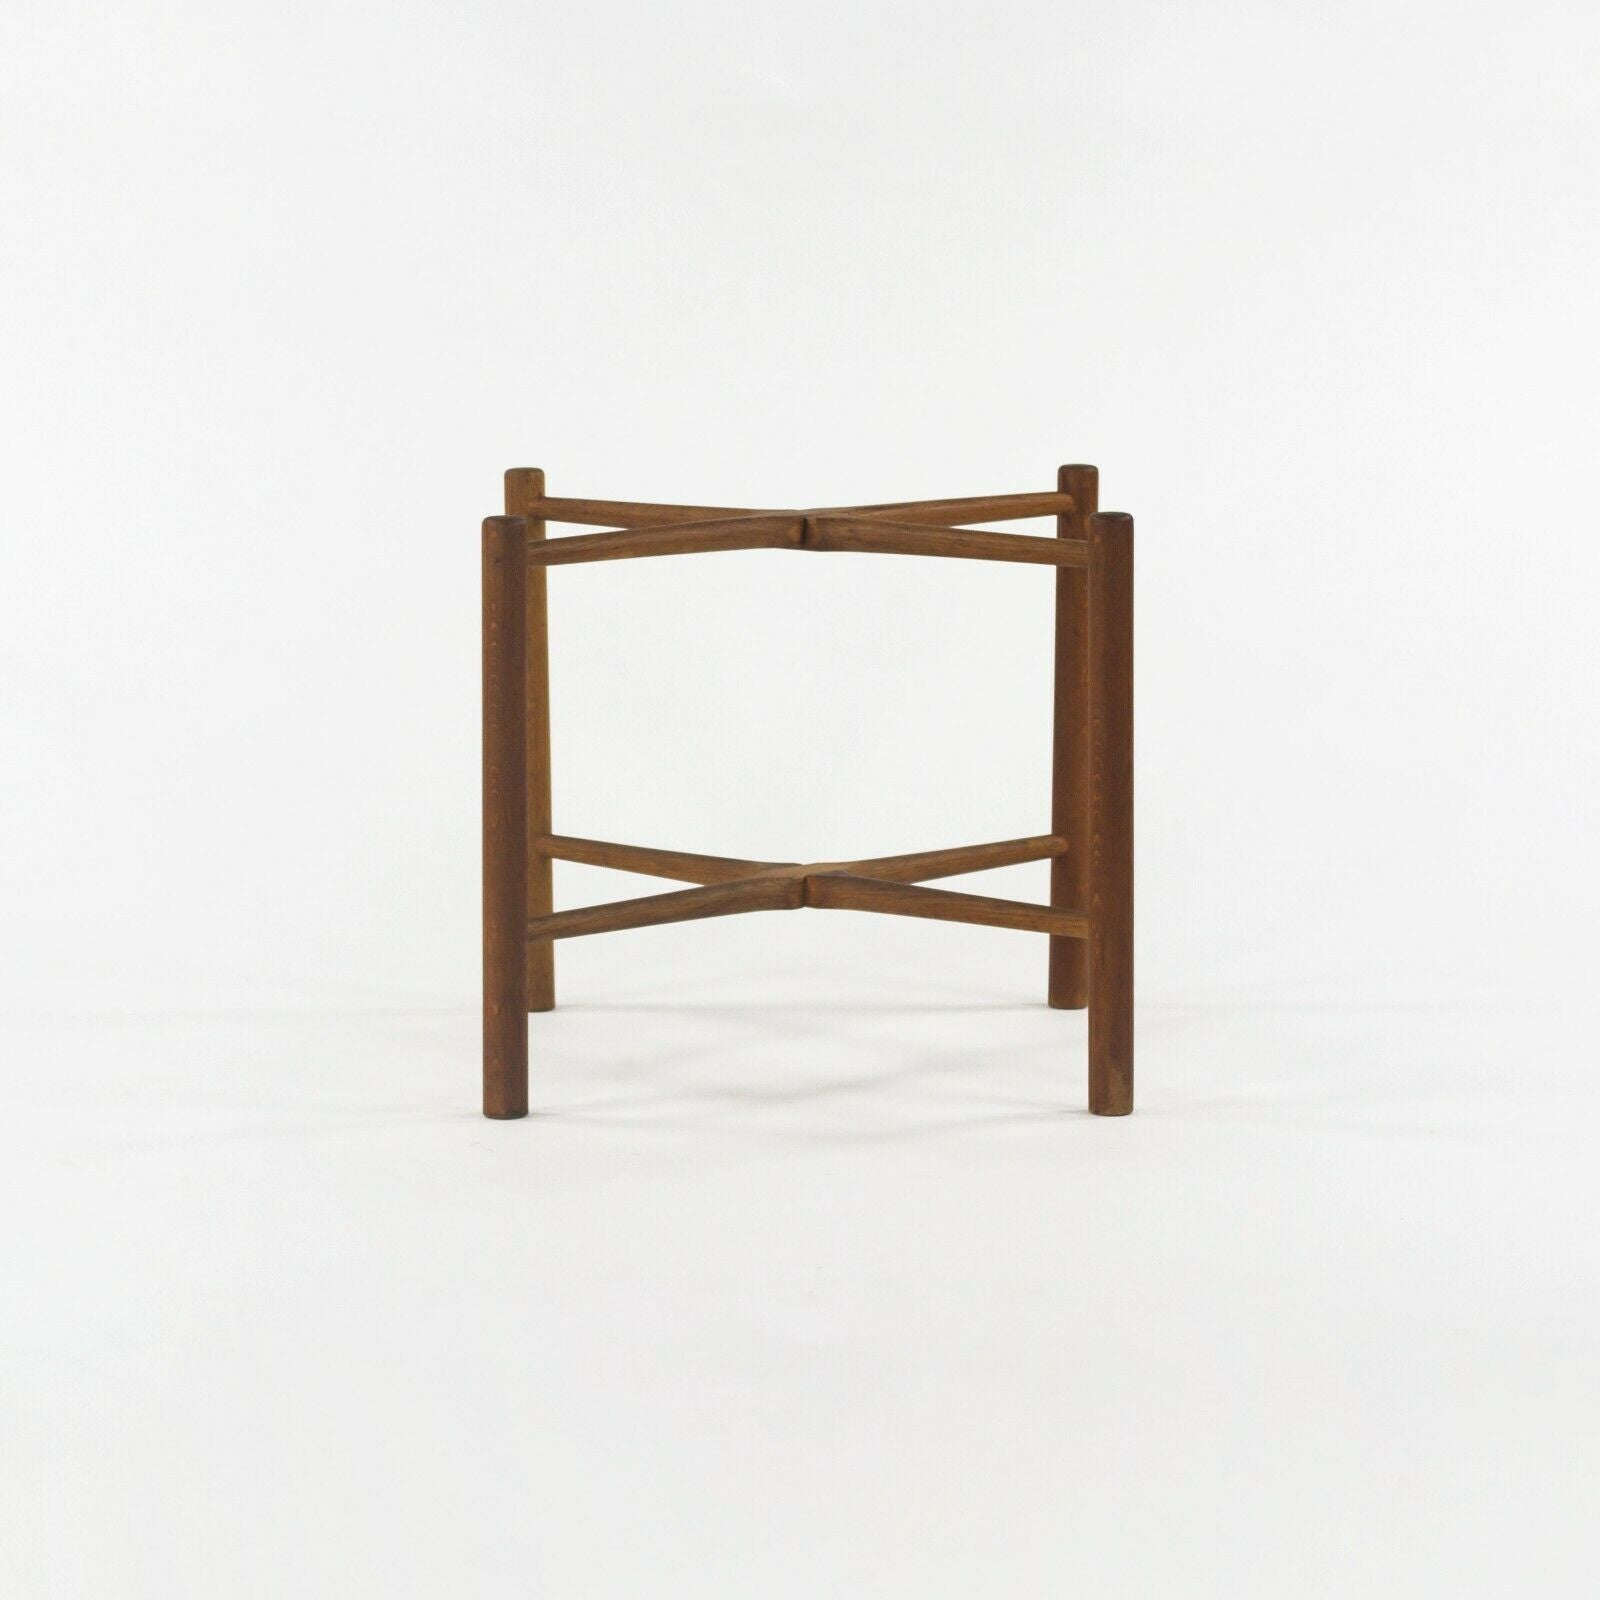 1960 PP35 Hans Wegner for Andreas Tuck Folding Teak & Oak Side Table 2 Available